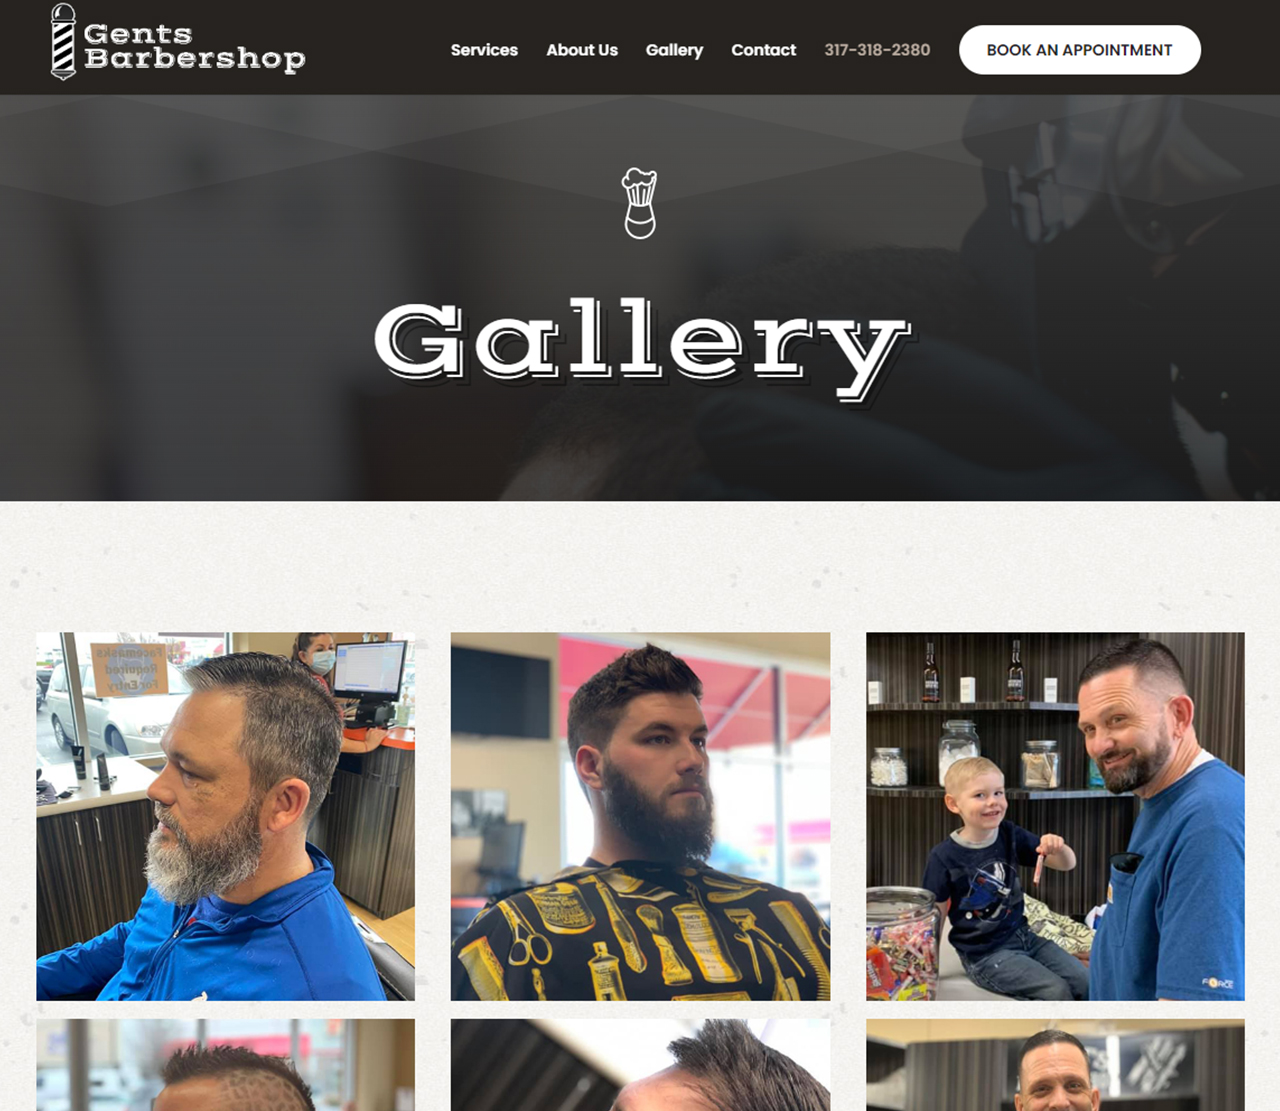 Gents Barbershop Gallery Page